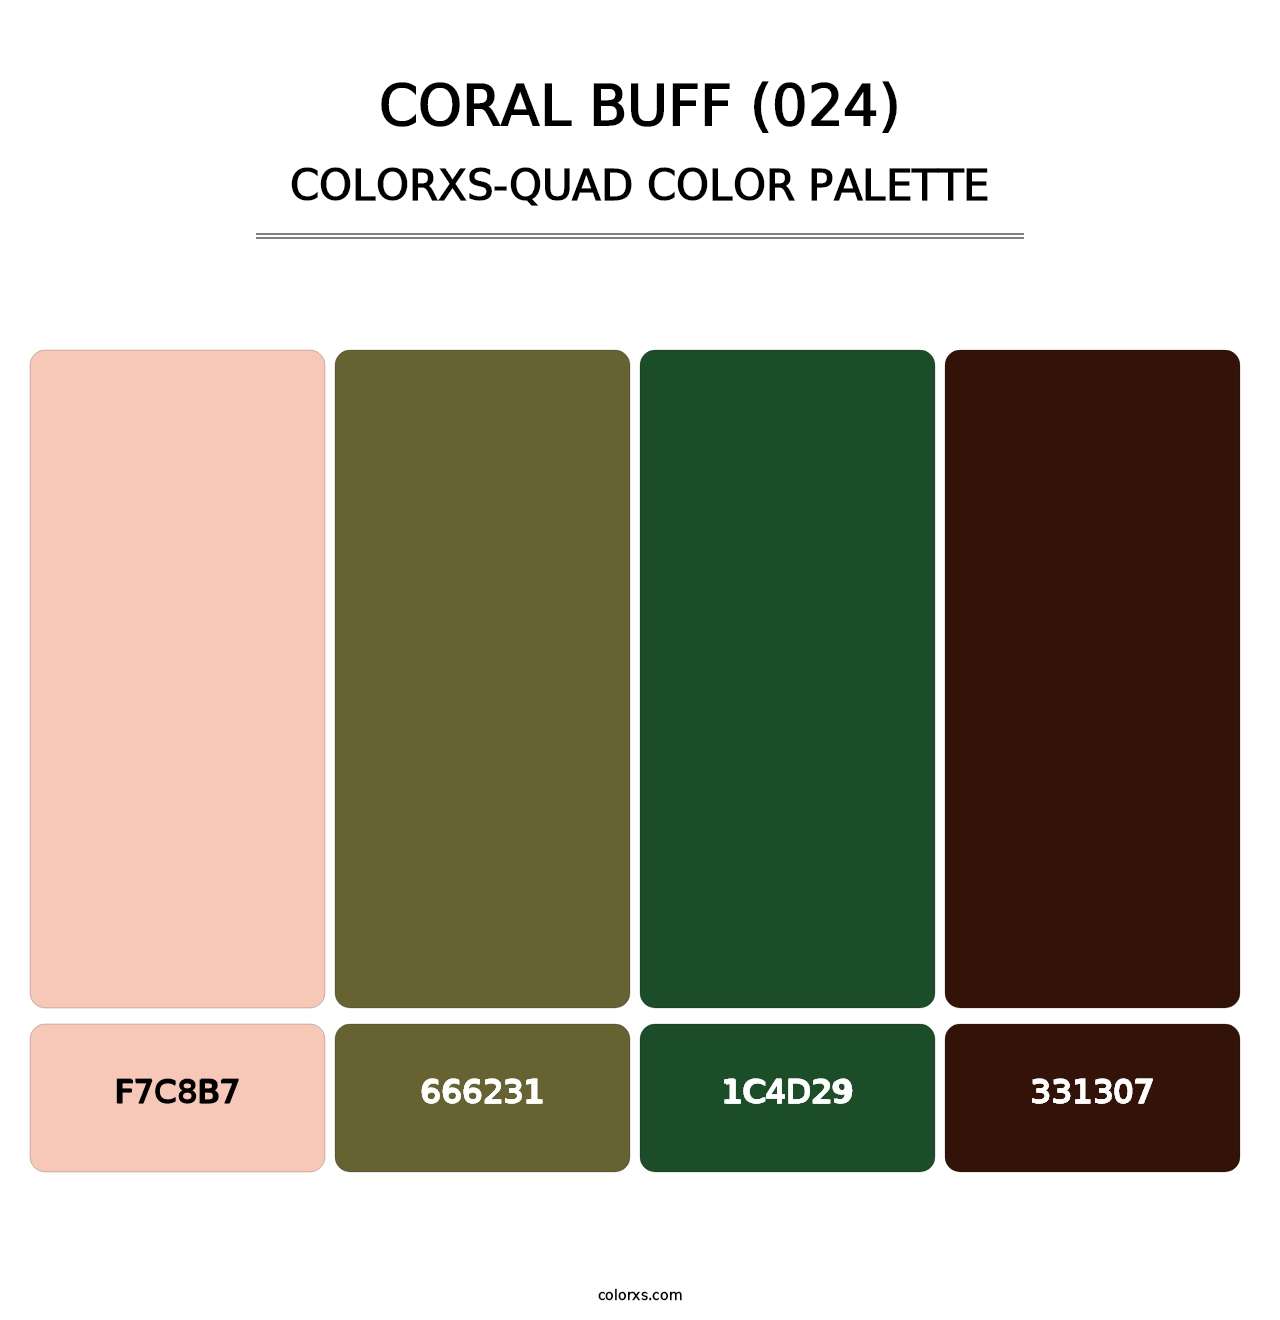 Coral Buff (024) - Colorxs Quad Palette